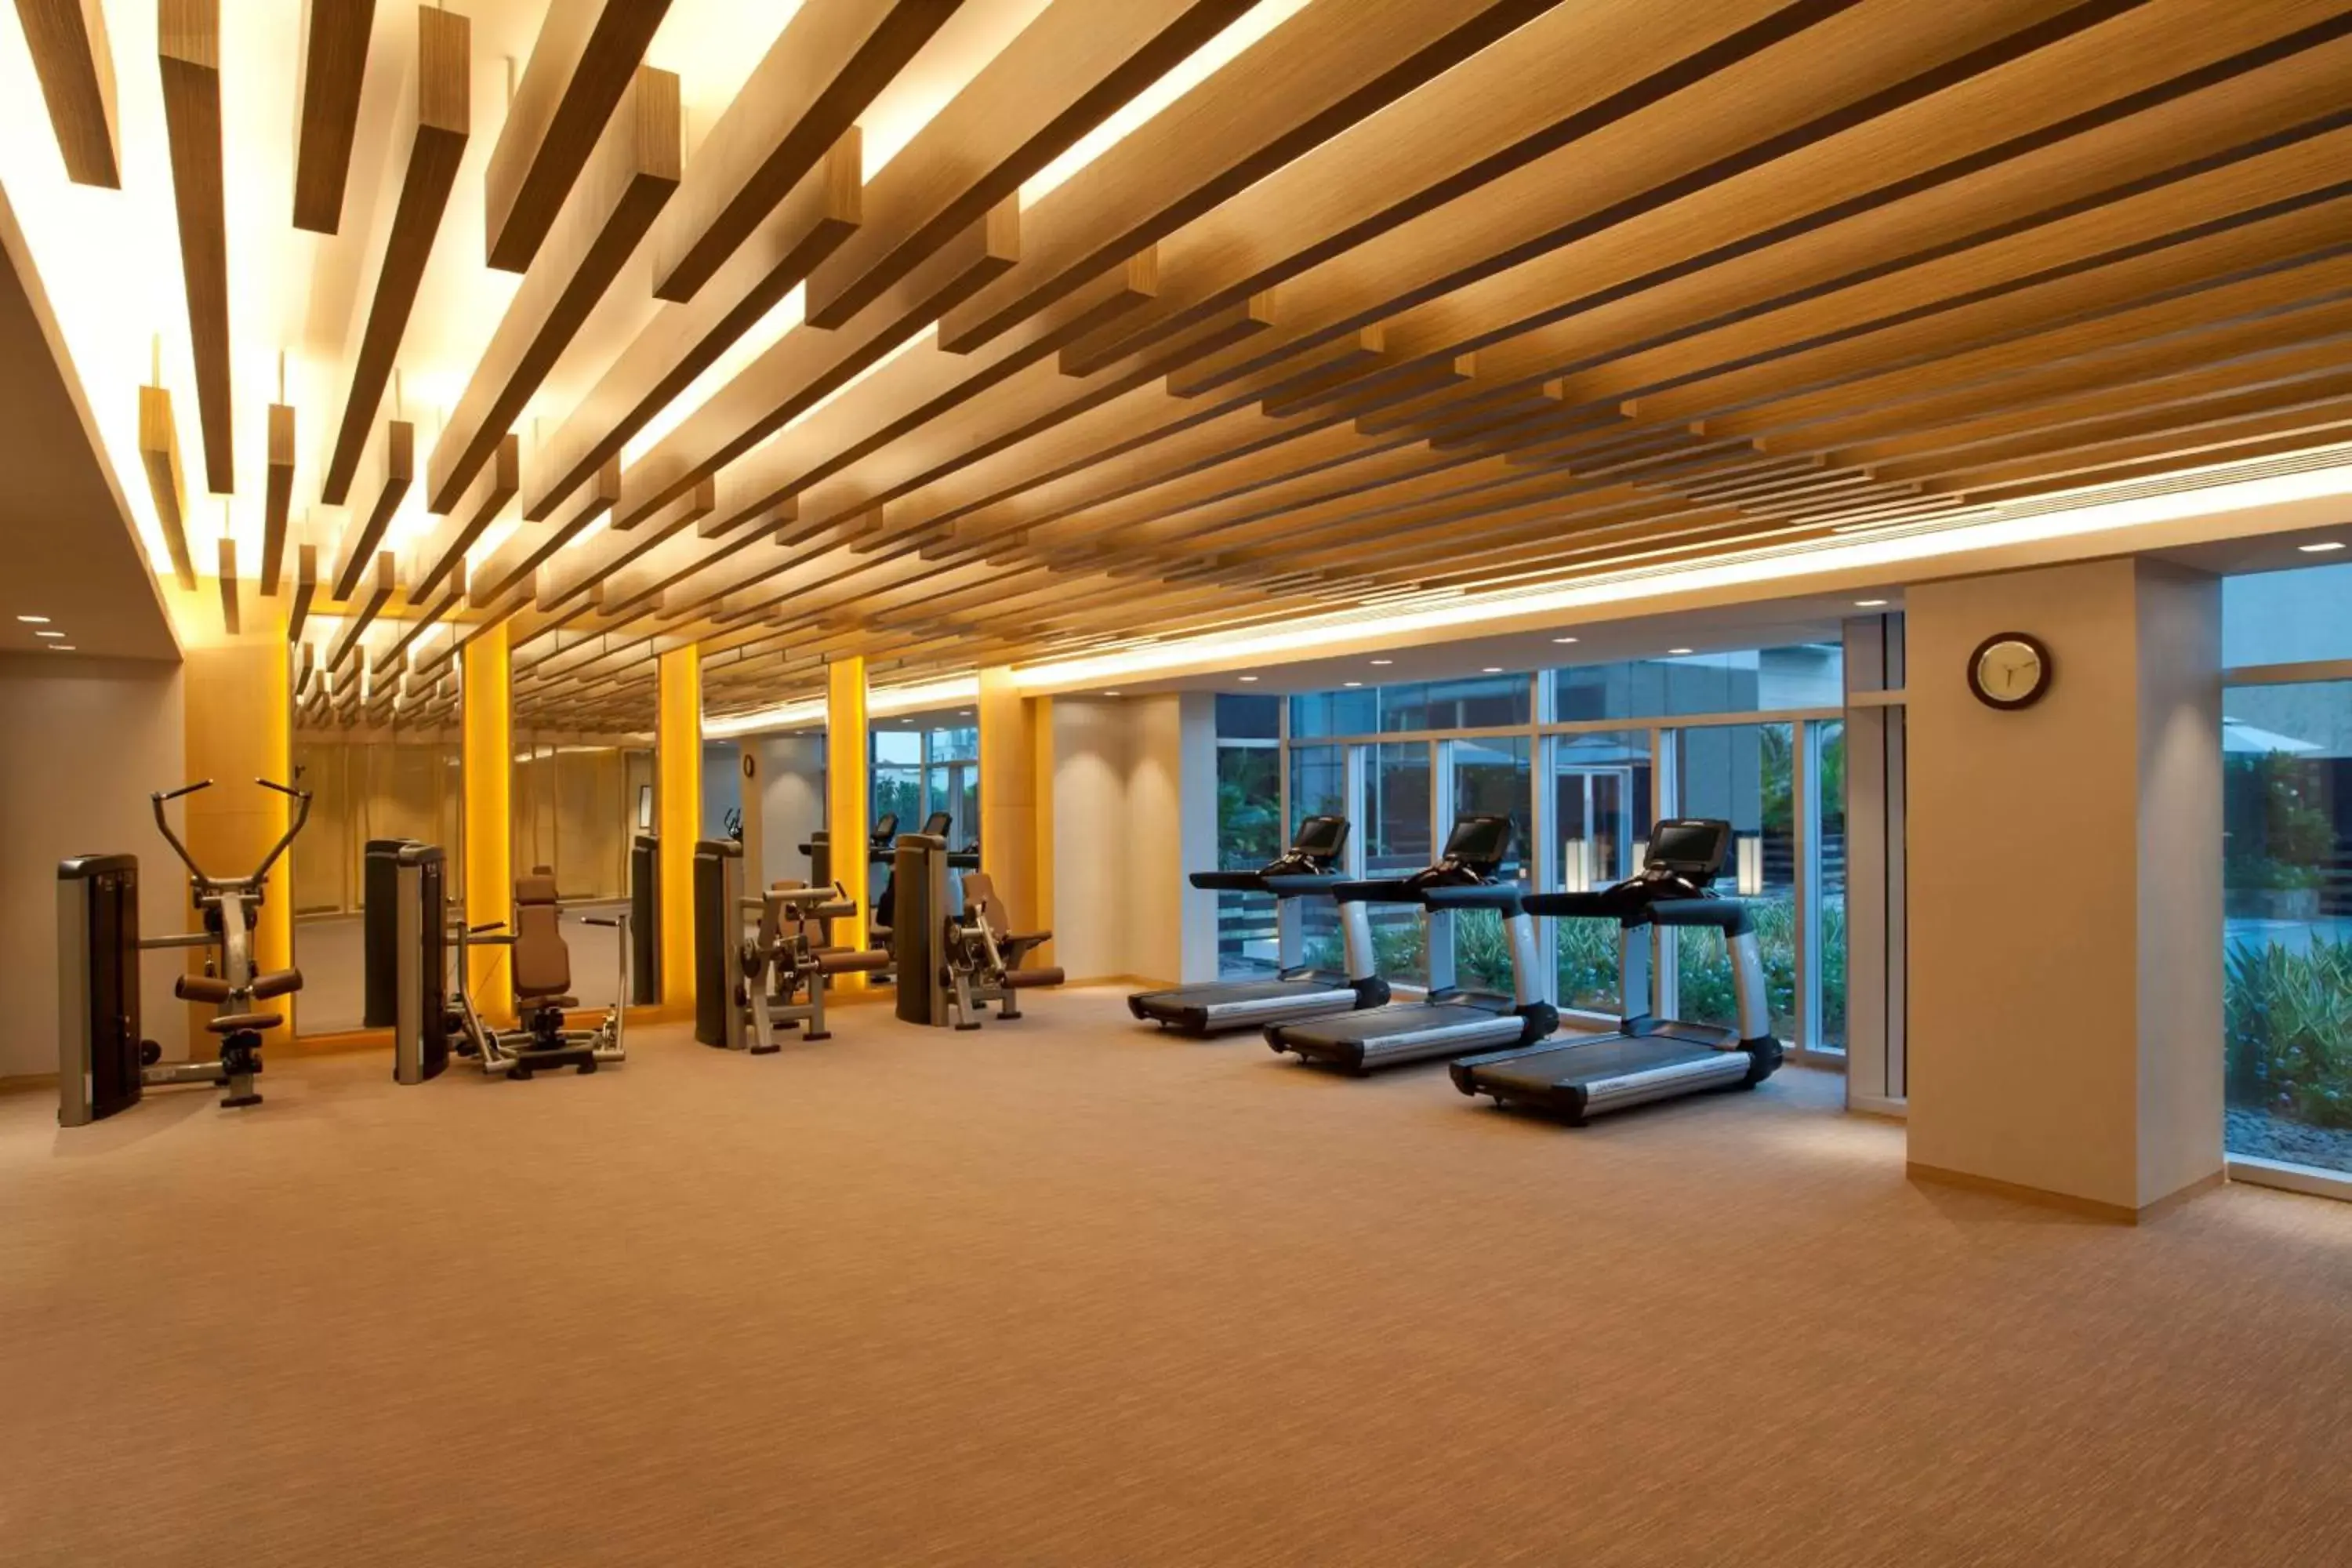 Fitness centre/facilities, Fitness Center/Facilities in Hyatt Regency Ahmedabad